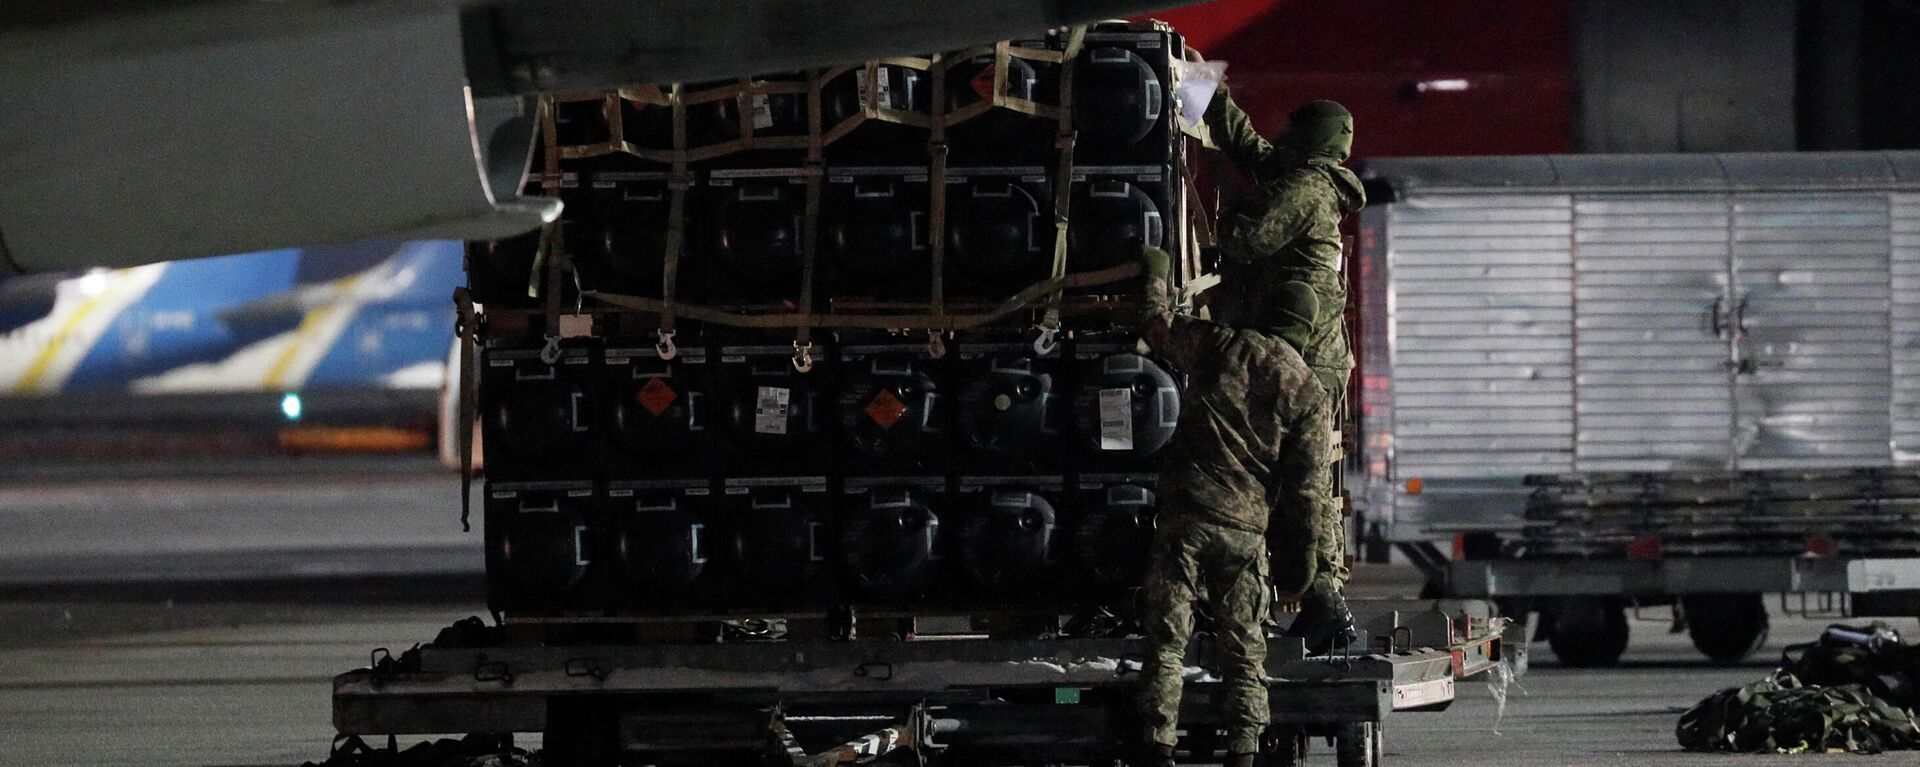 Membros do serviço ucraniano descarregam carregamento de ajuda militar entregue como parte da assistência de segurança dos Estados Unidos à Ucrânia, no Aeroporto Internacional de Boryspil, Kiev, 25 de janeiro de 2022 - Sputnik Brasil, 1920, 25.01.2022